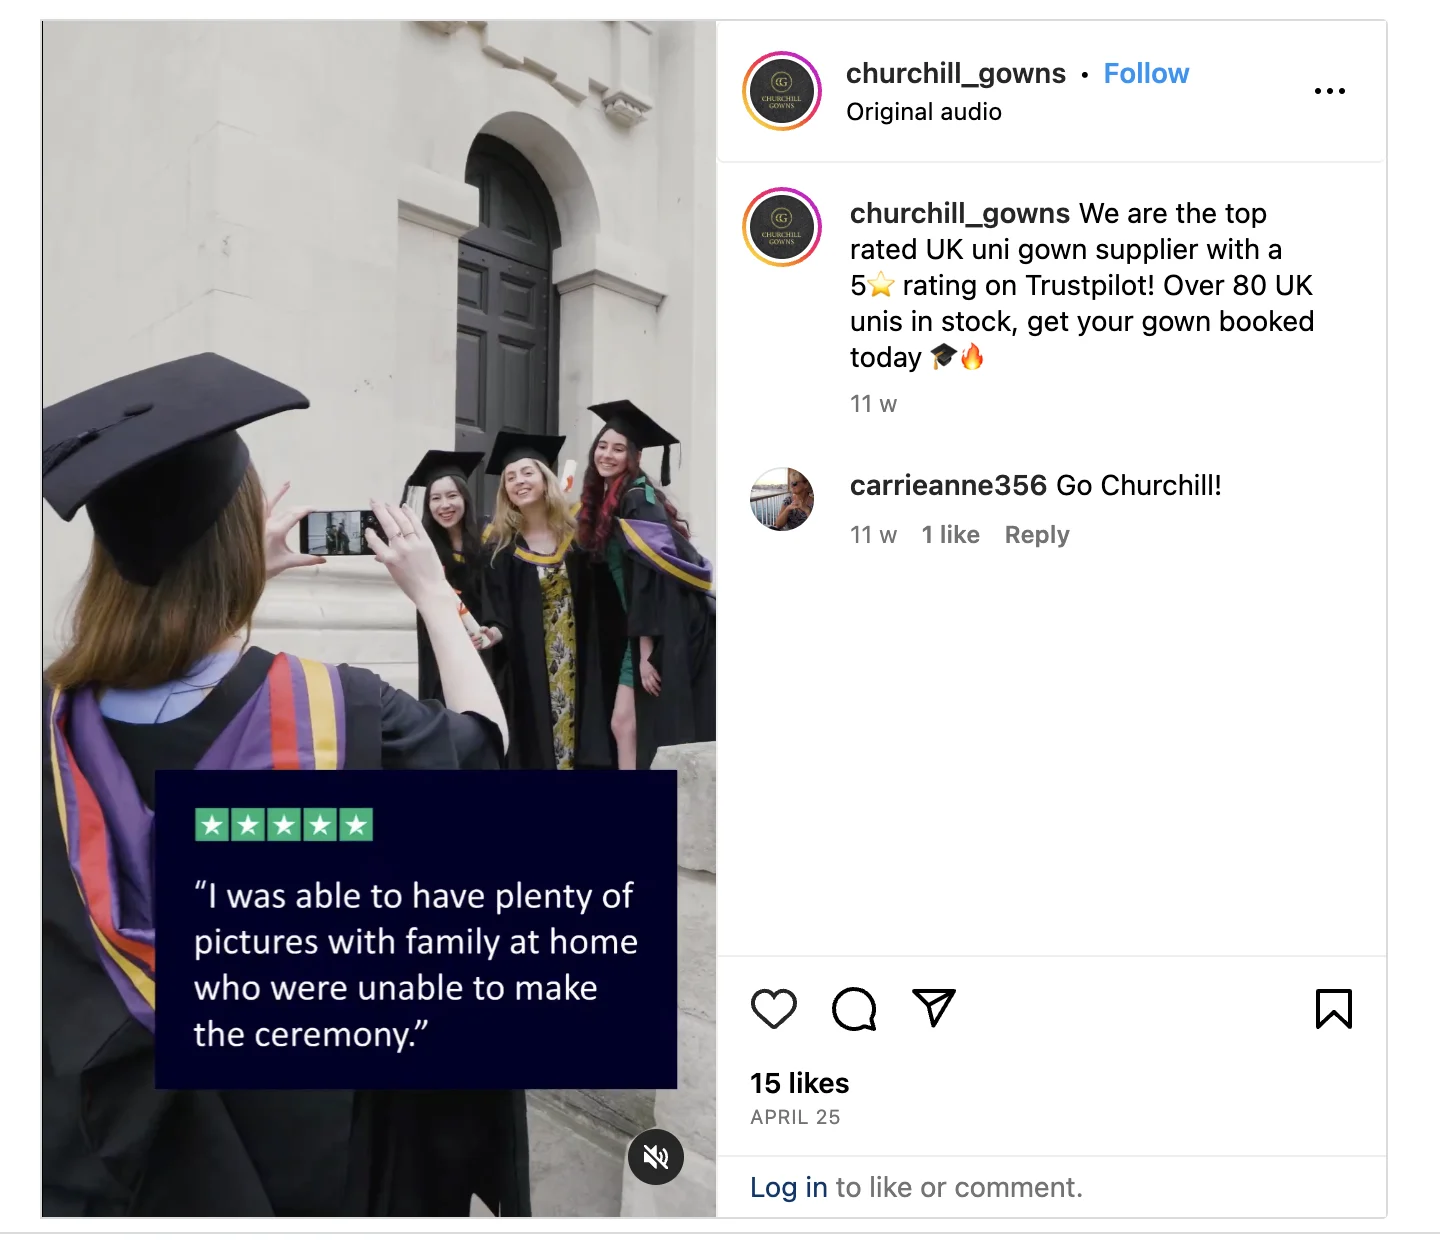 Videoclip von Churchill Gowns auf Instagram